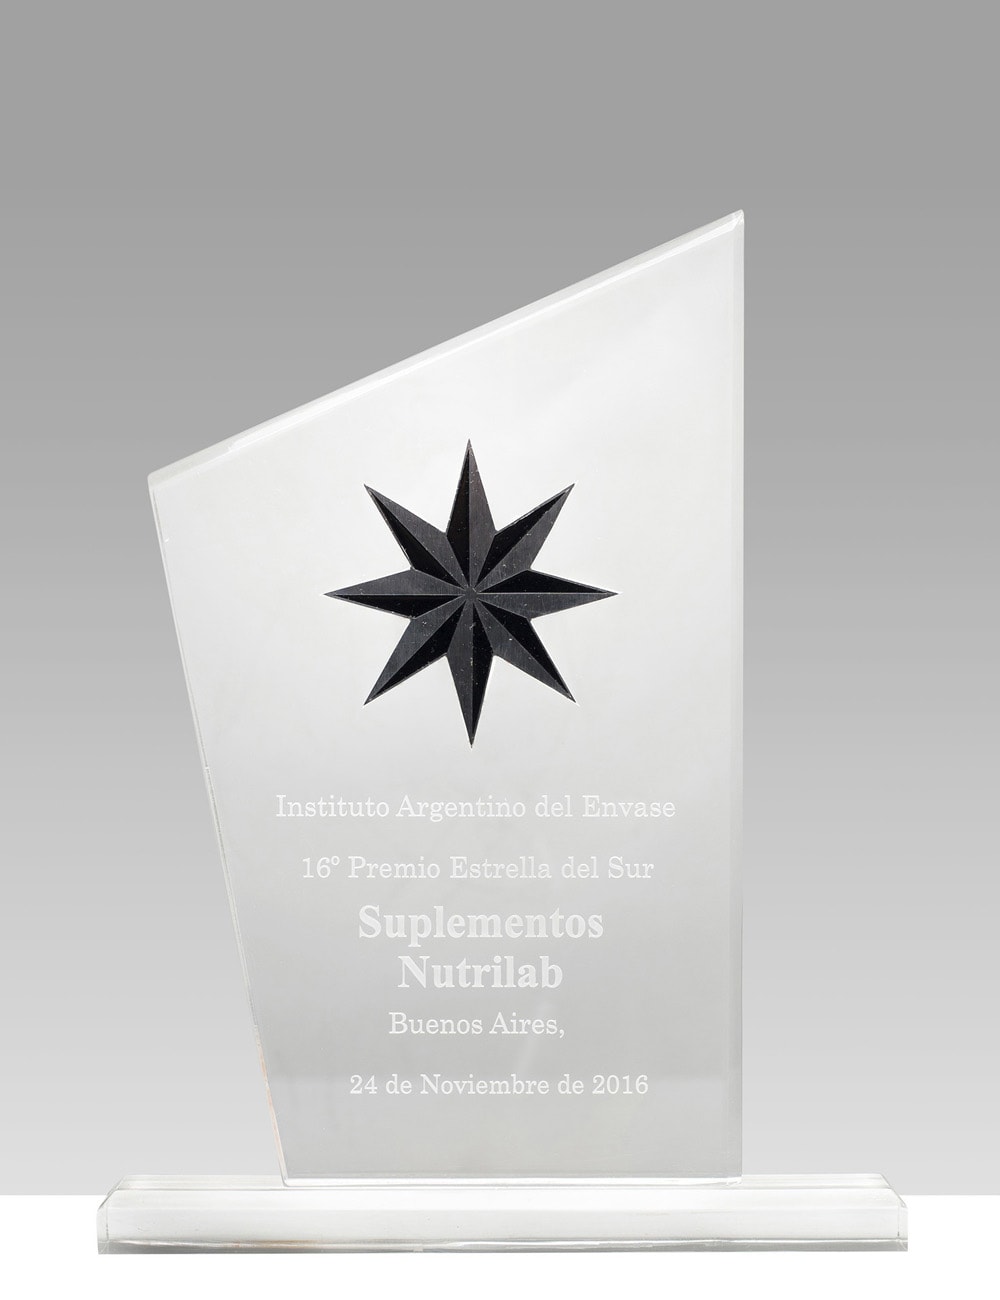 16º Premio Estrella del Sur - Suplementos Nutrilab.